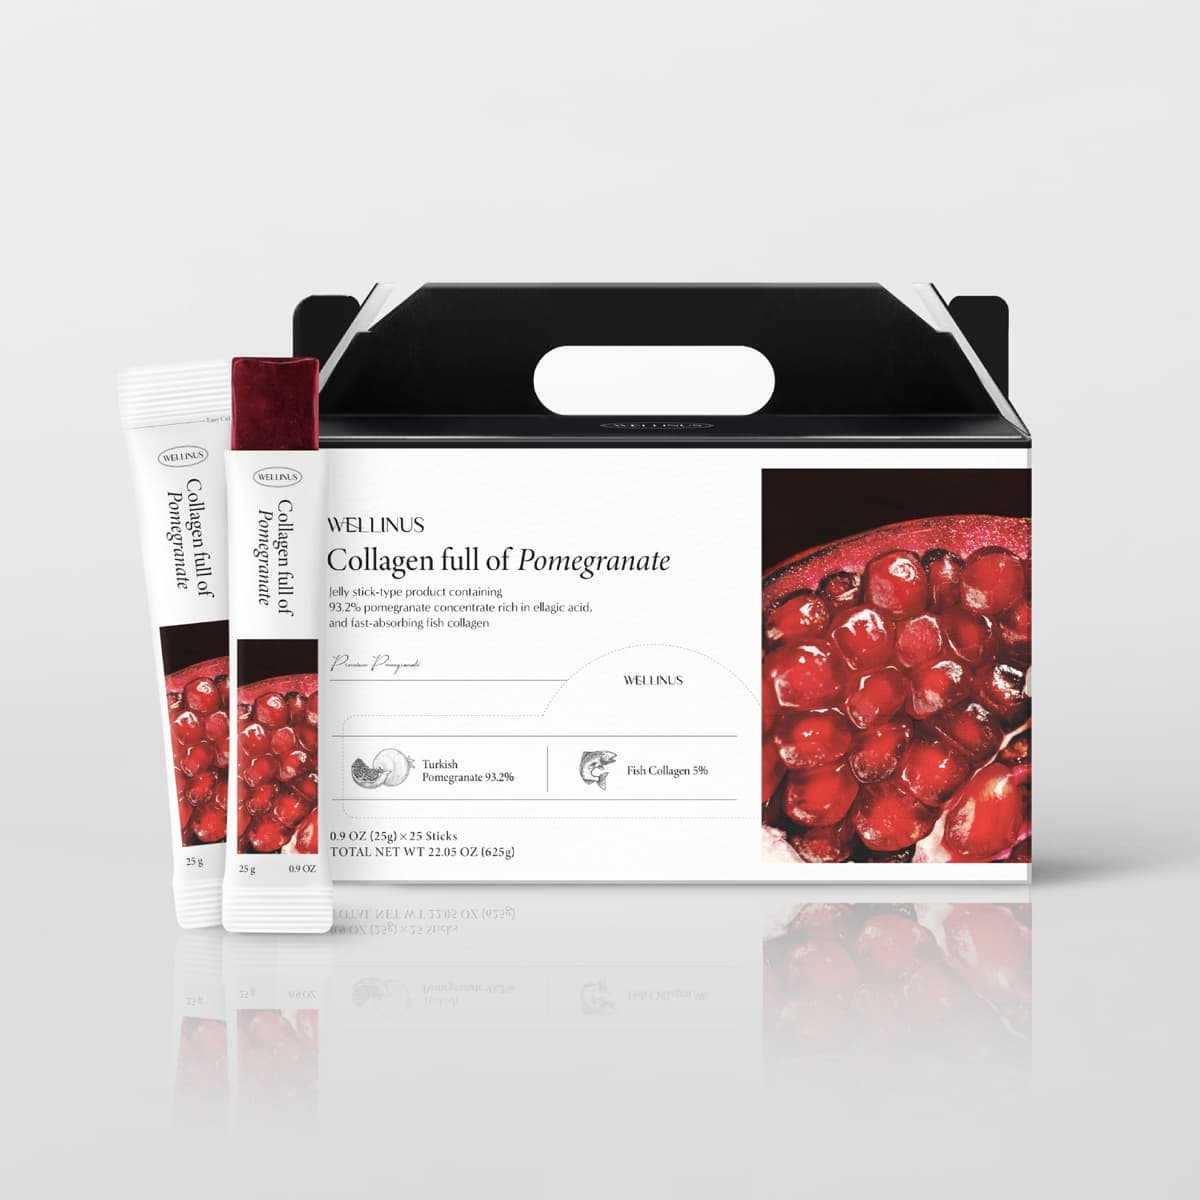 Collagen full of Pomegranate